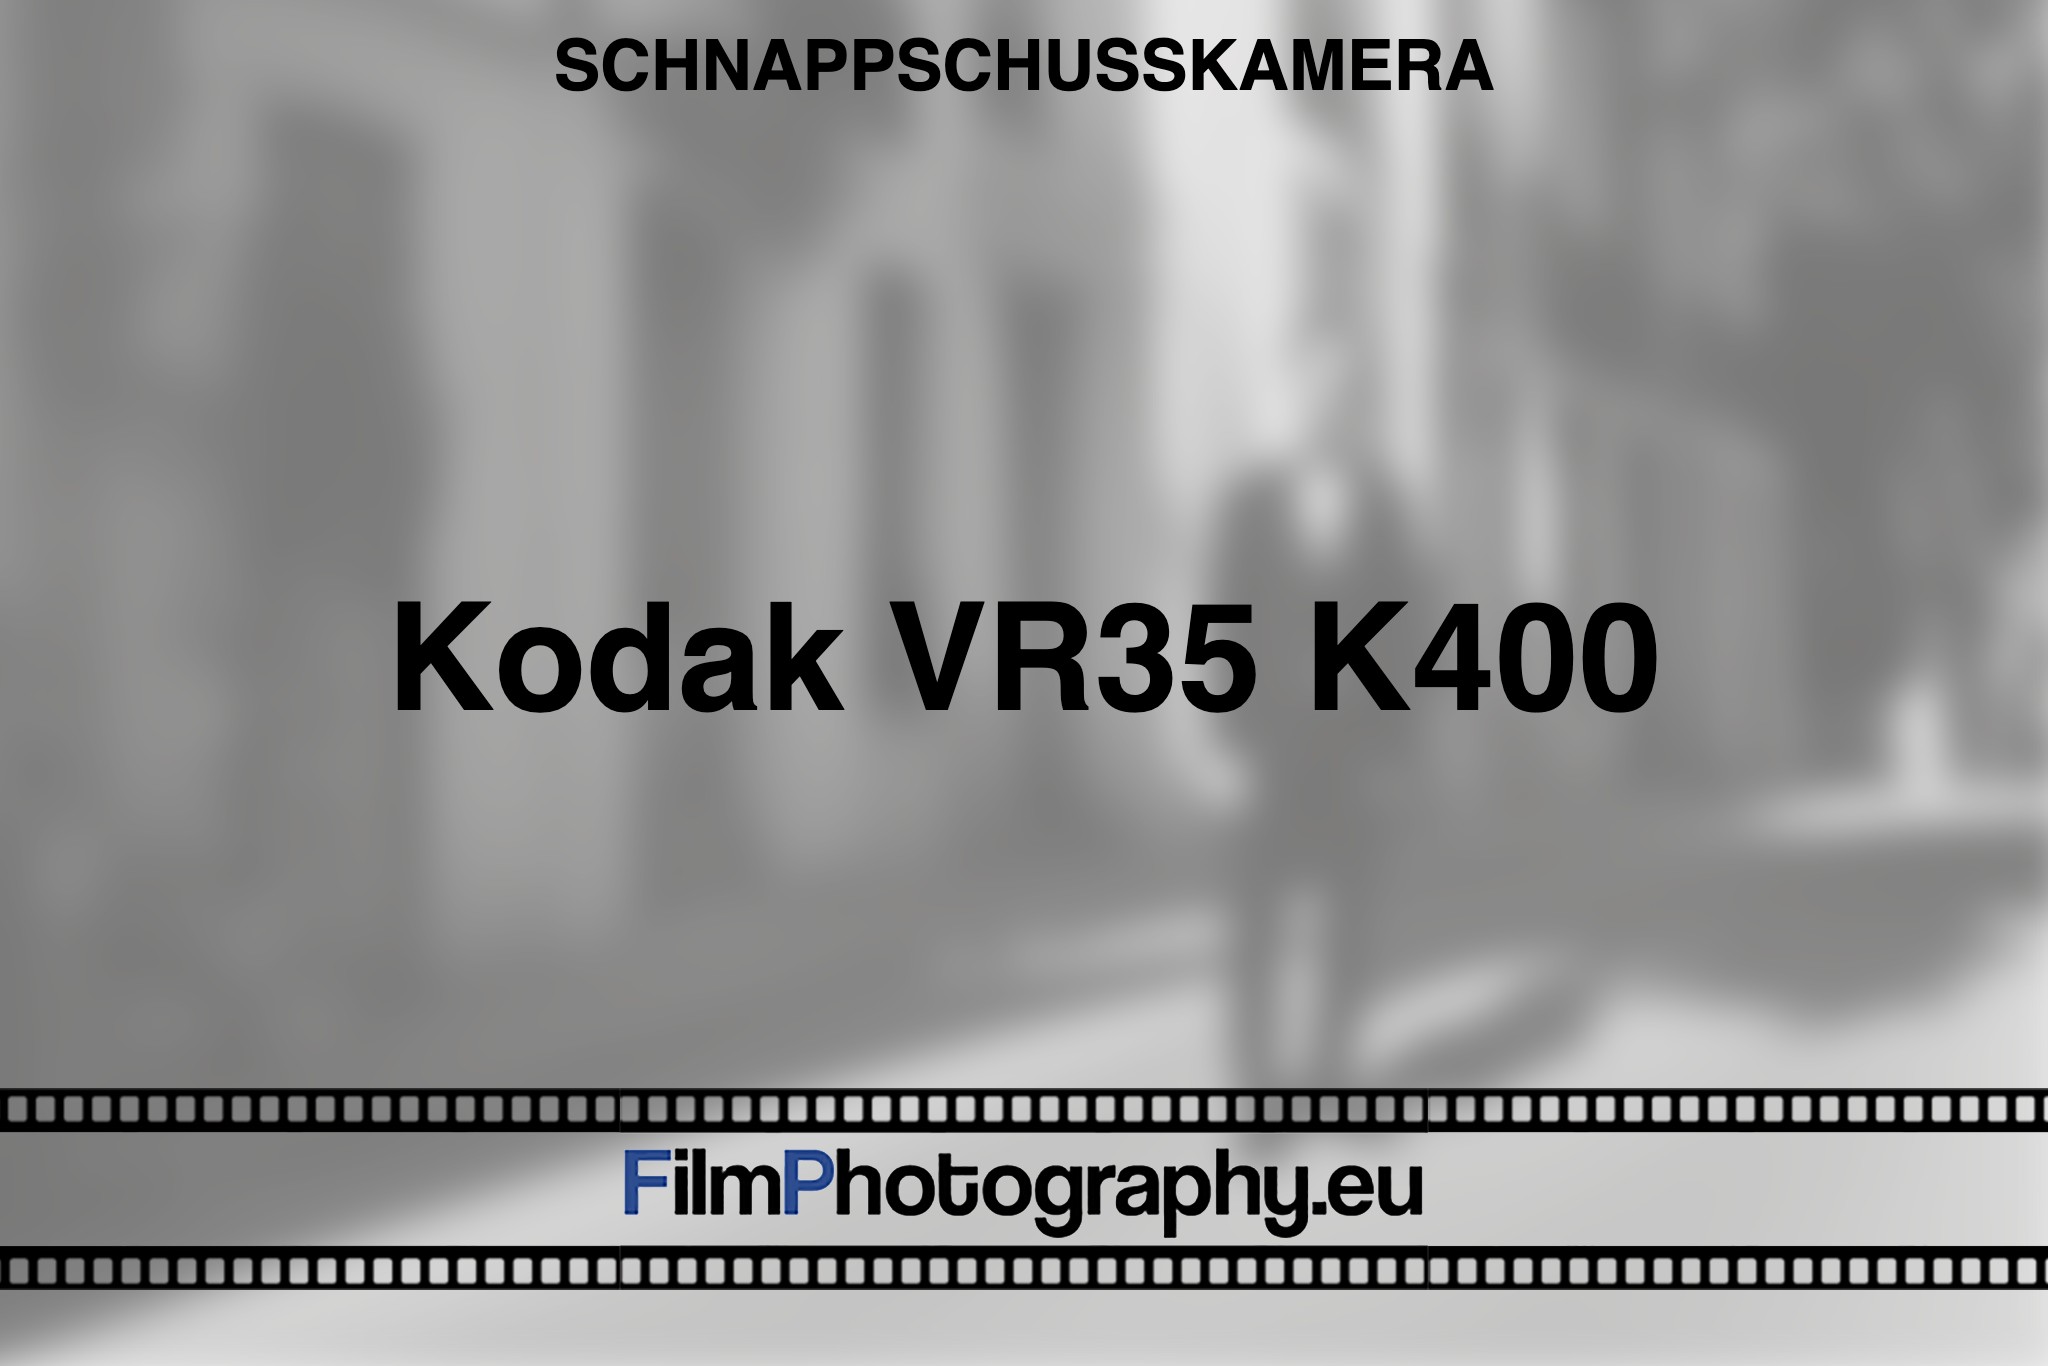 kodak-vr35-k400-schnappschusskamera-bnv